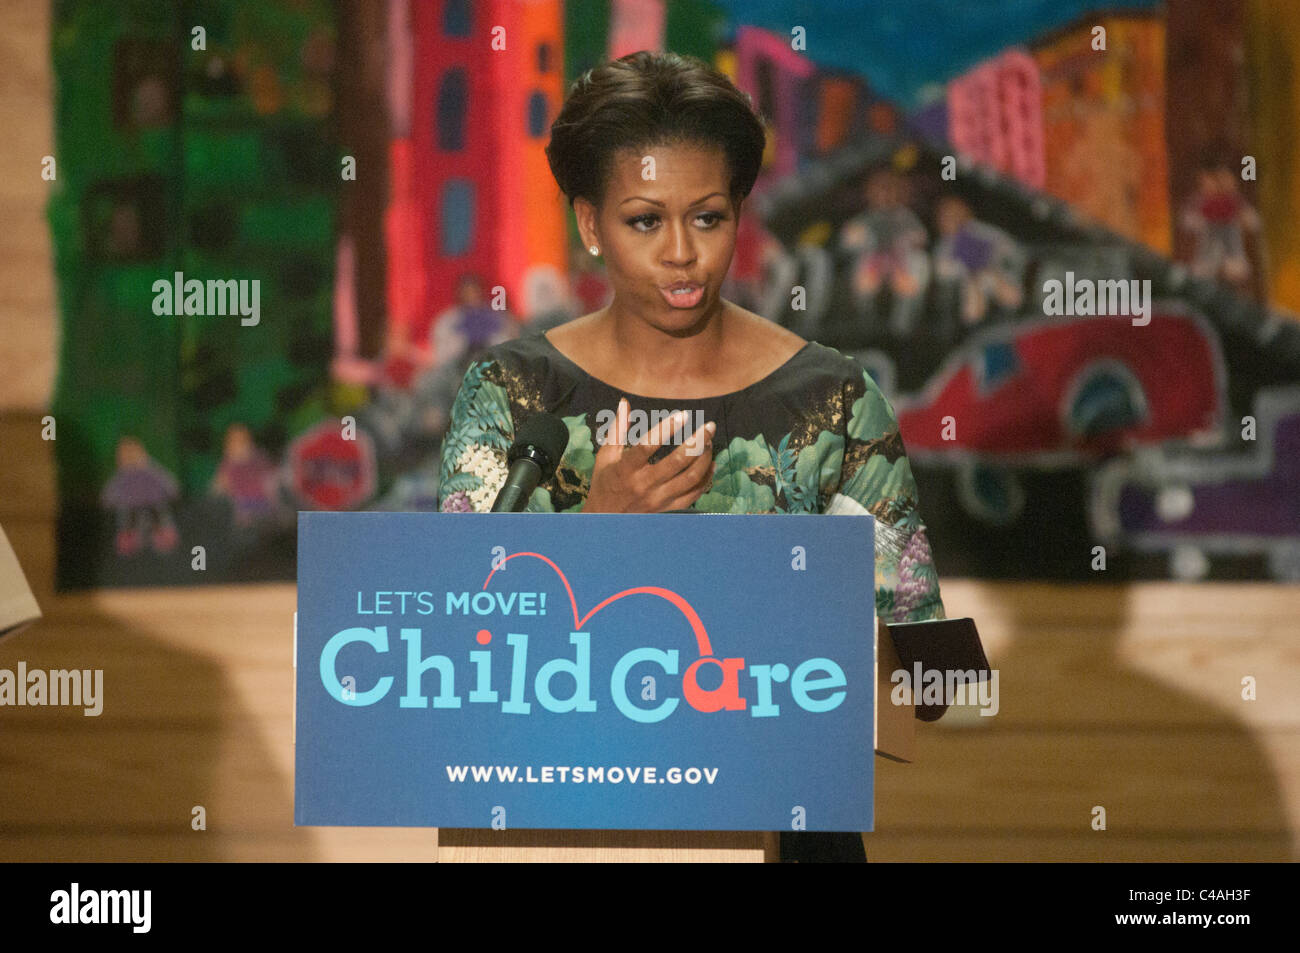 La Première Dame Michelle Obama dévoile vous permet de bouger ! Les soins aux enfants, un nouvel effort pour travailler avec les fournisseurs de services de garderie. Banque D'Images